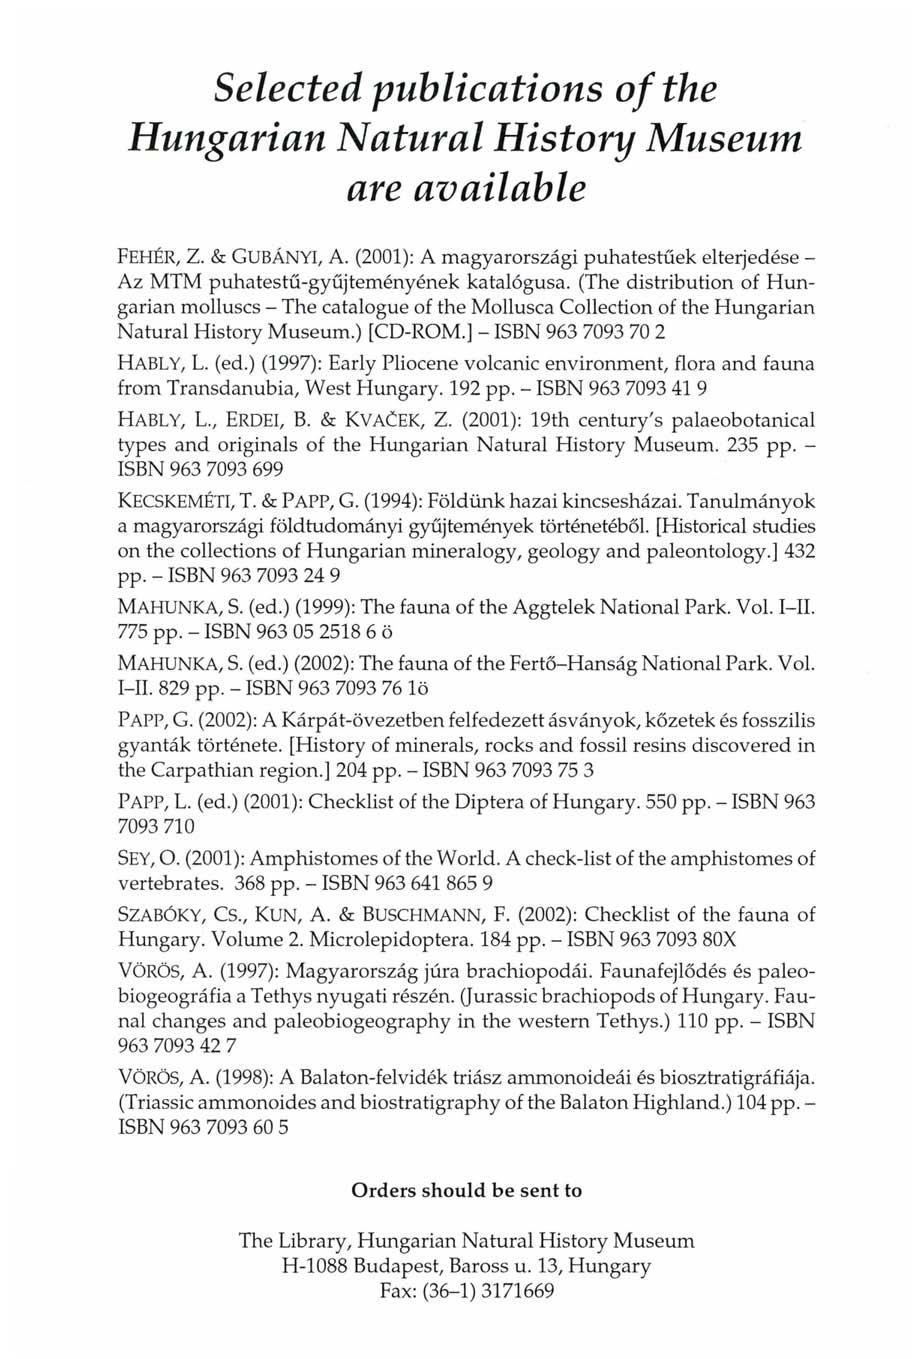 Selected publications of the Hungarian Natural History Museum are available FEHÉR, Z. & GUBÁNYI, A. (2001): A magyarországi puhatestűek elterjedése - Az MTM puhatestű-gyűjteményének katalógusa.